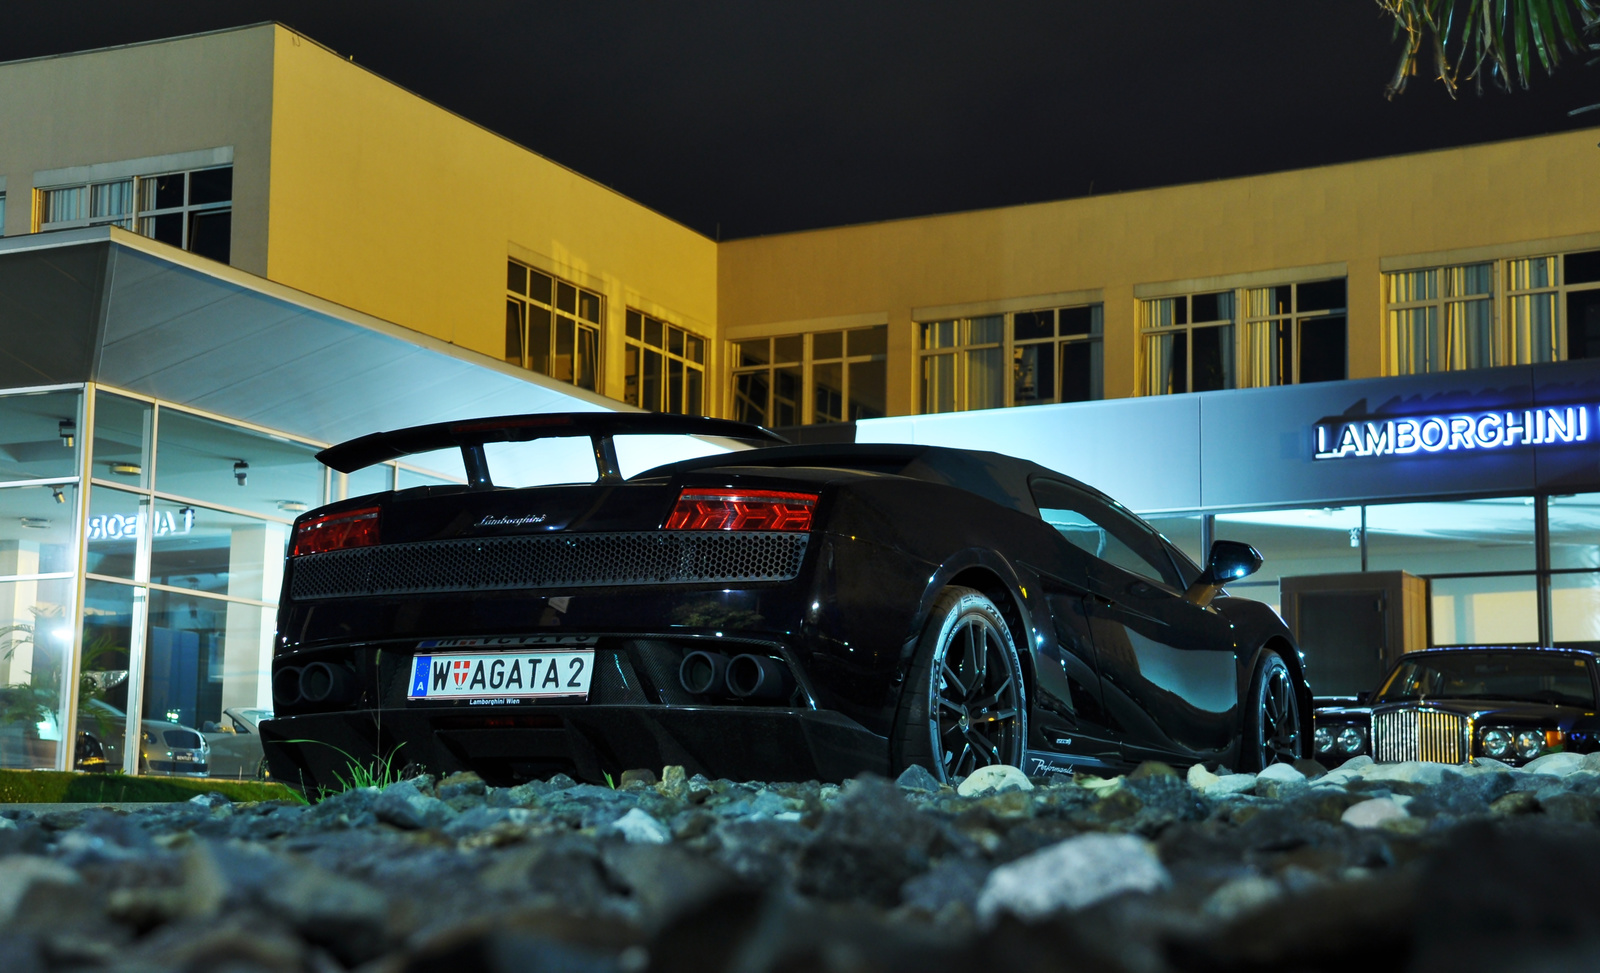 Lamborghini in the Night